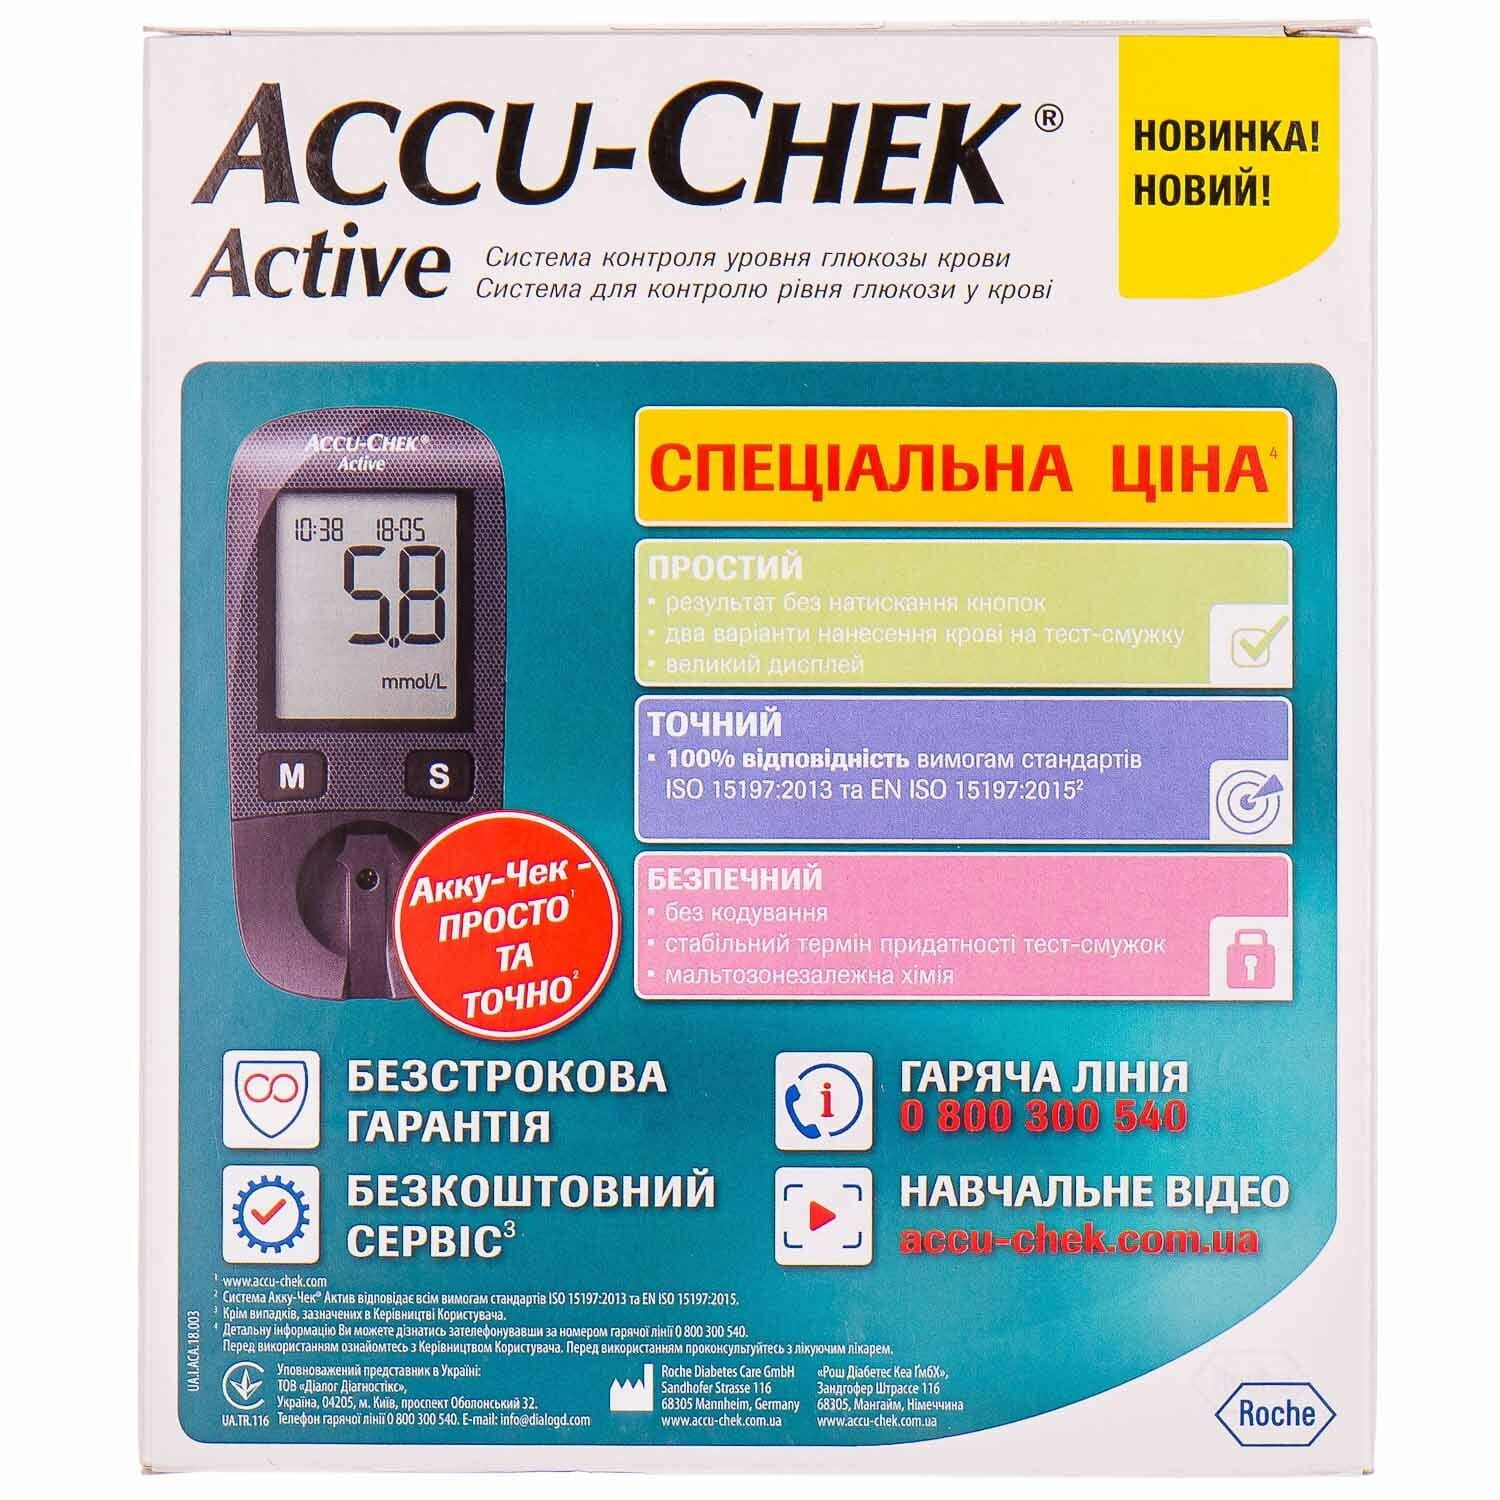 Як правильно користуватися глюкометром Акку-Чек Актив?